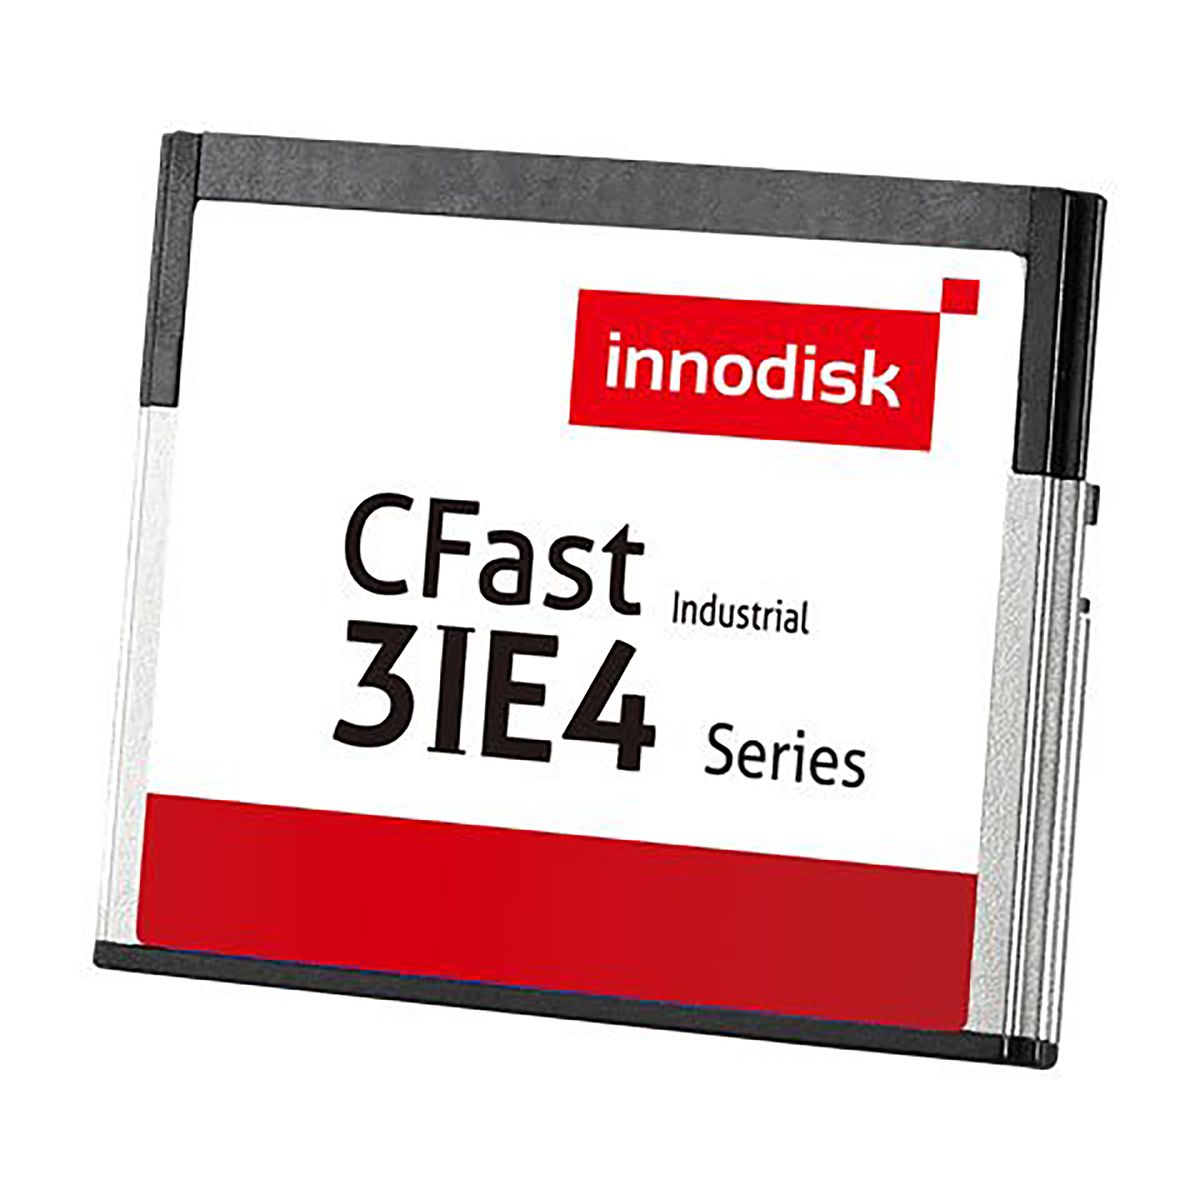 InnoDisk 3IE4 CFast Industrial 8 GB iSLC Compact Flash Card